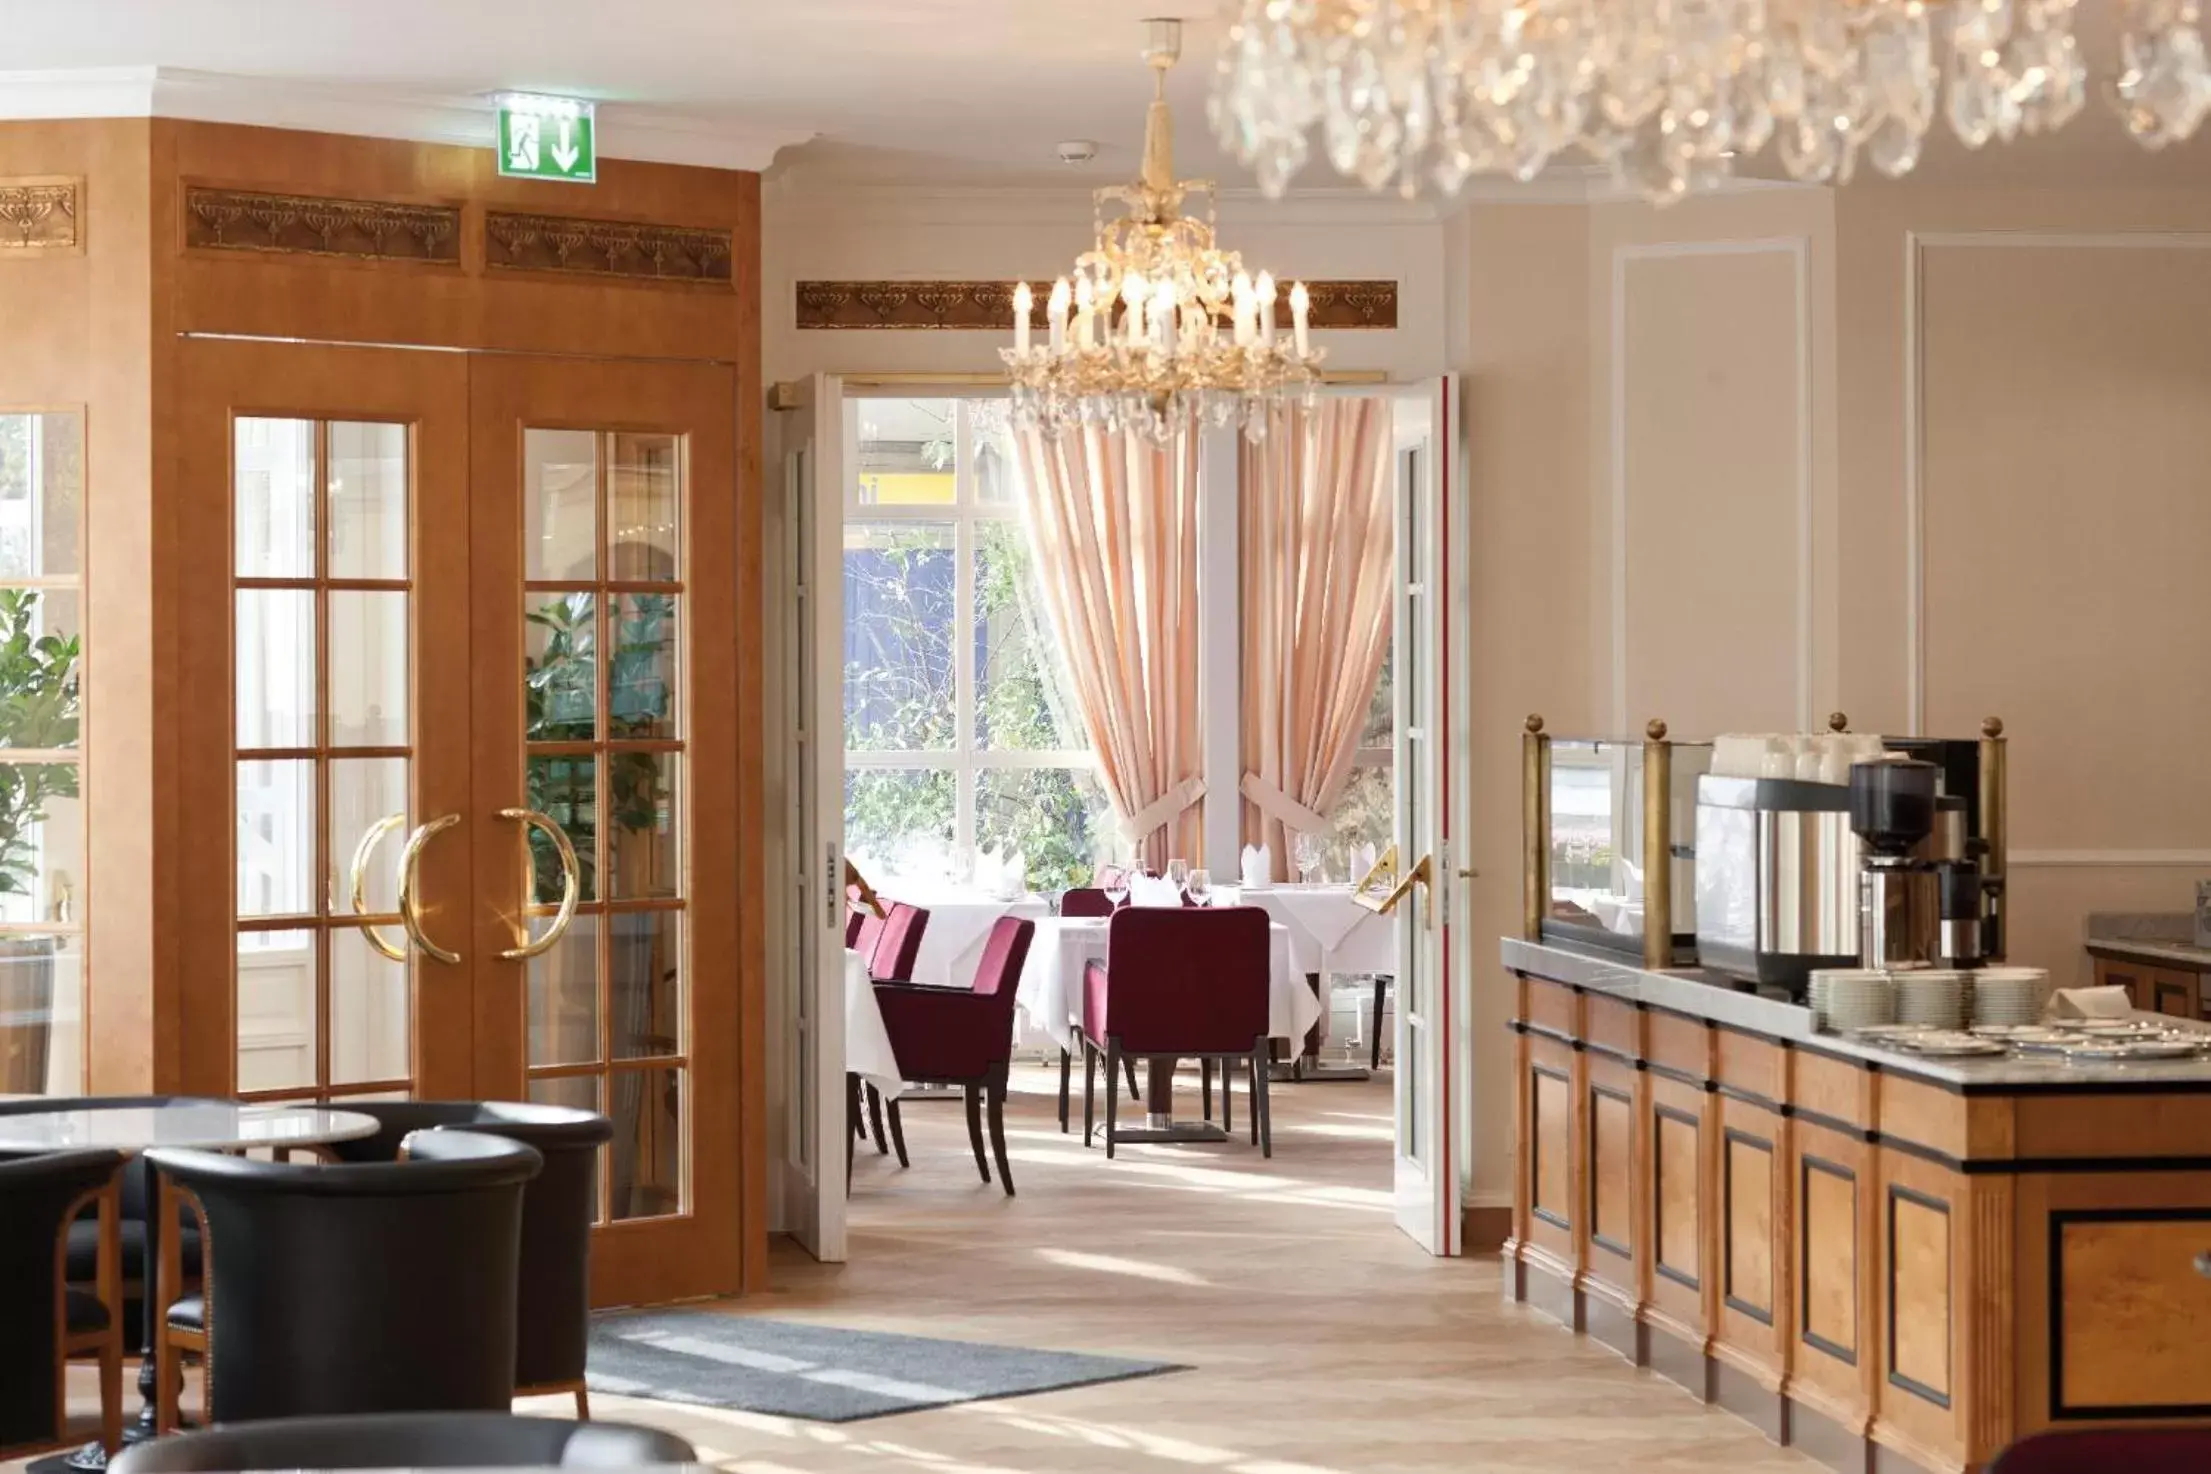 Restaurant/places to eat in Austria Trend Parkhotel Schönbrunn Wien